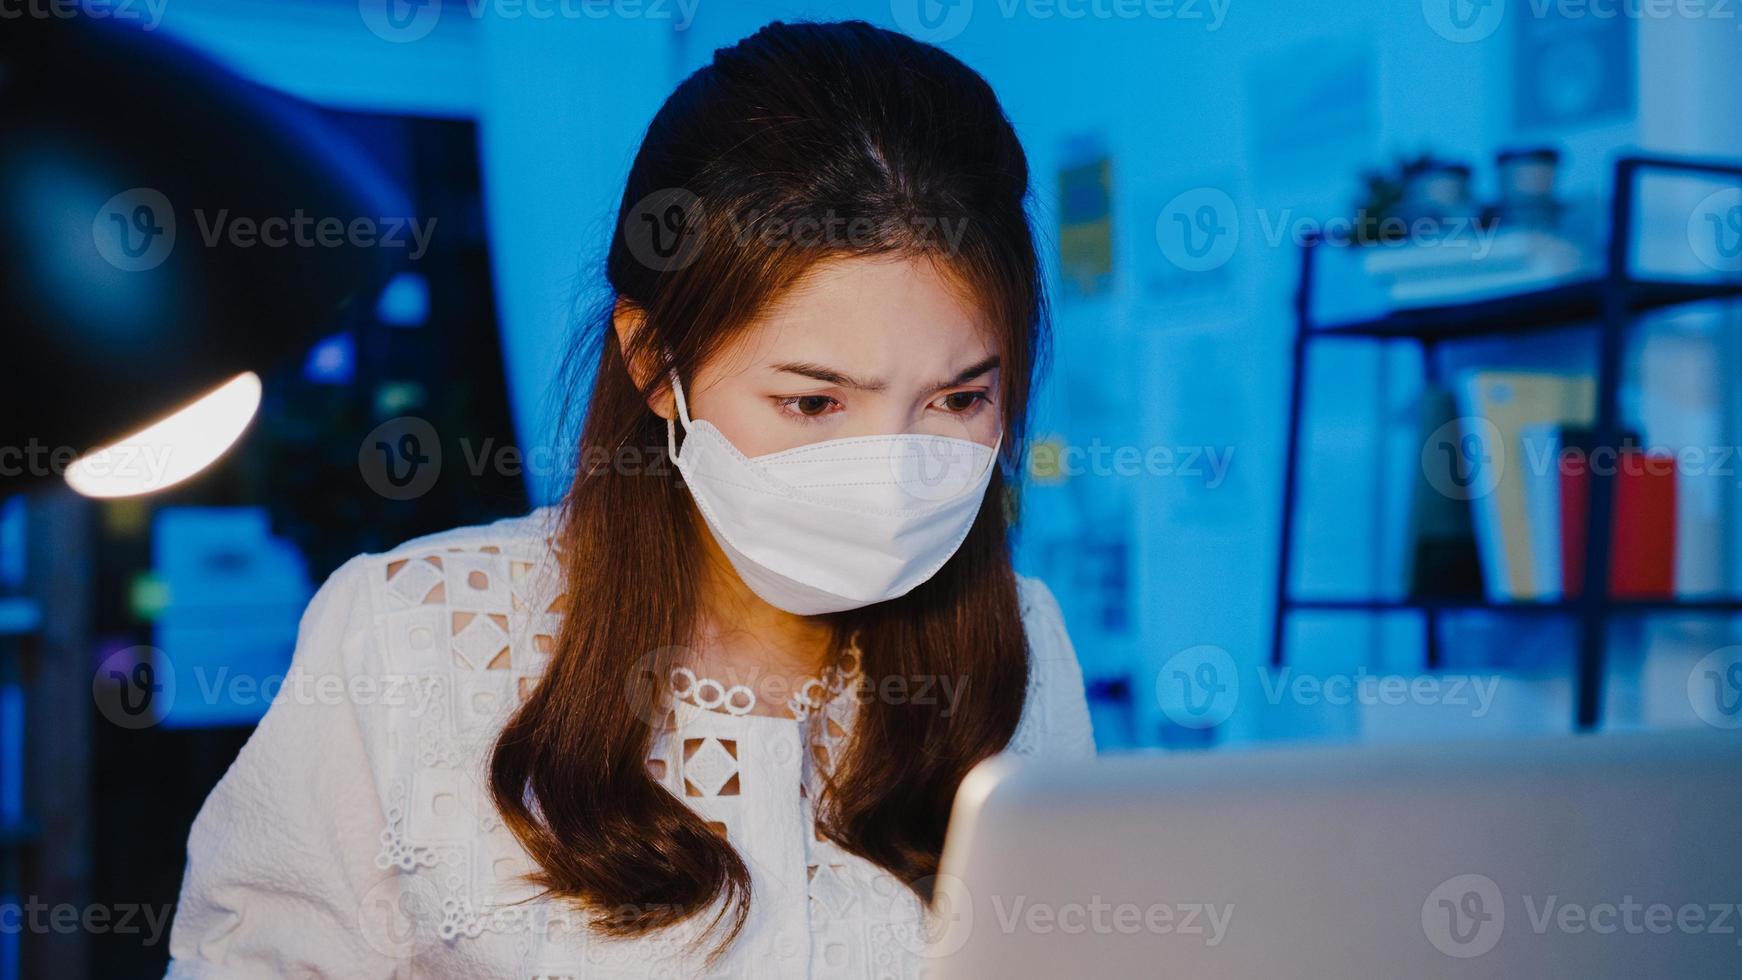 gelukkige zakenvrouw in azië die een medisch gezichtsmasker draagt voor sociale afstand in een nieuwe normale situatie voor viruspreventie tijdens het gebruik van een laptop op het werk in de kantoornacht. leven en werken na het coronavirus. foto